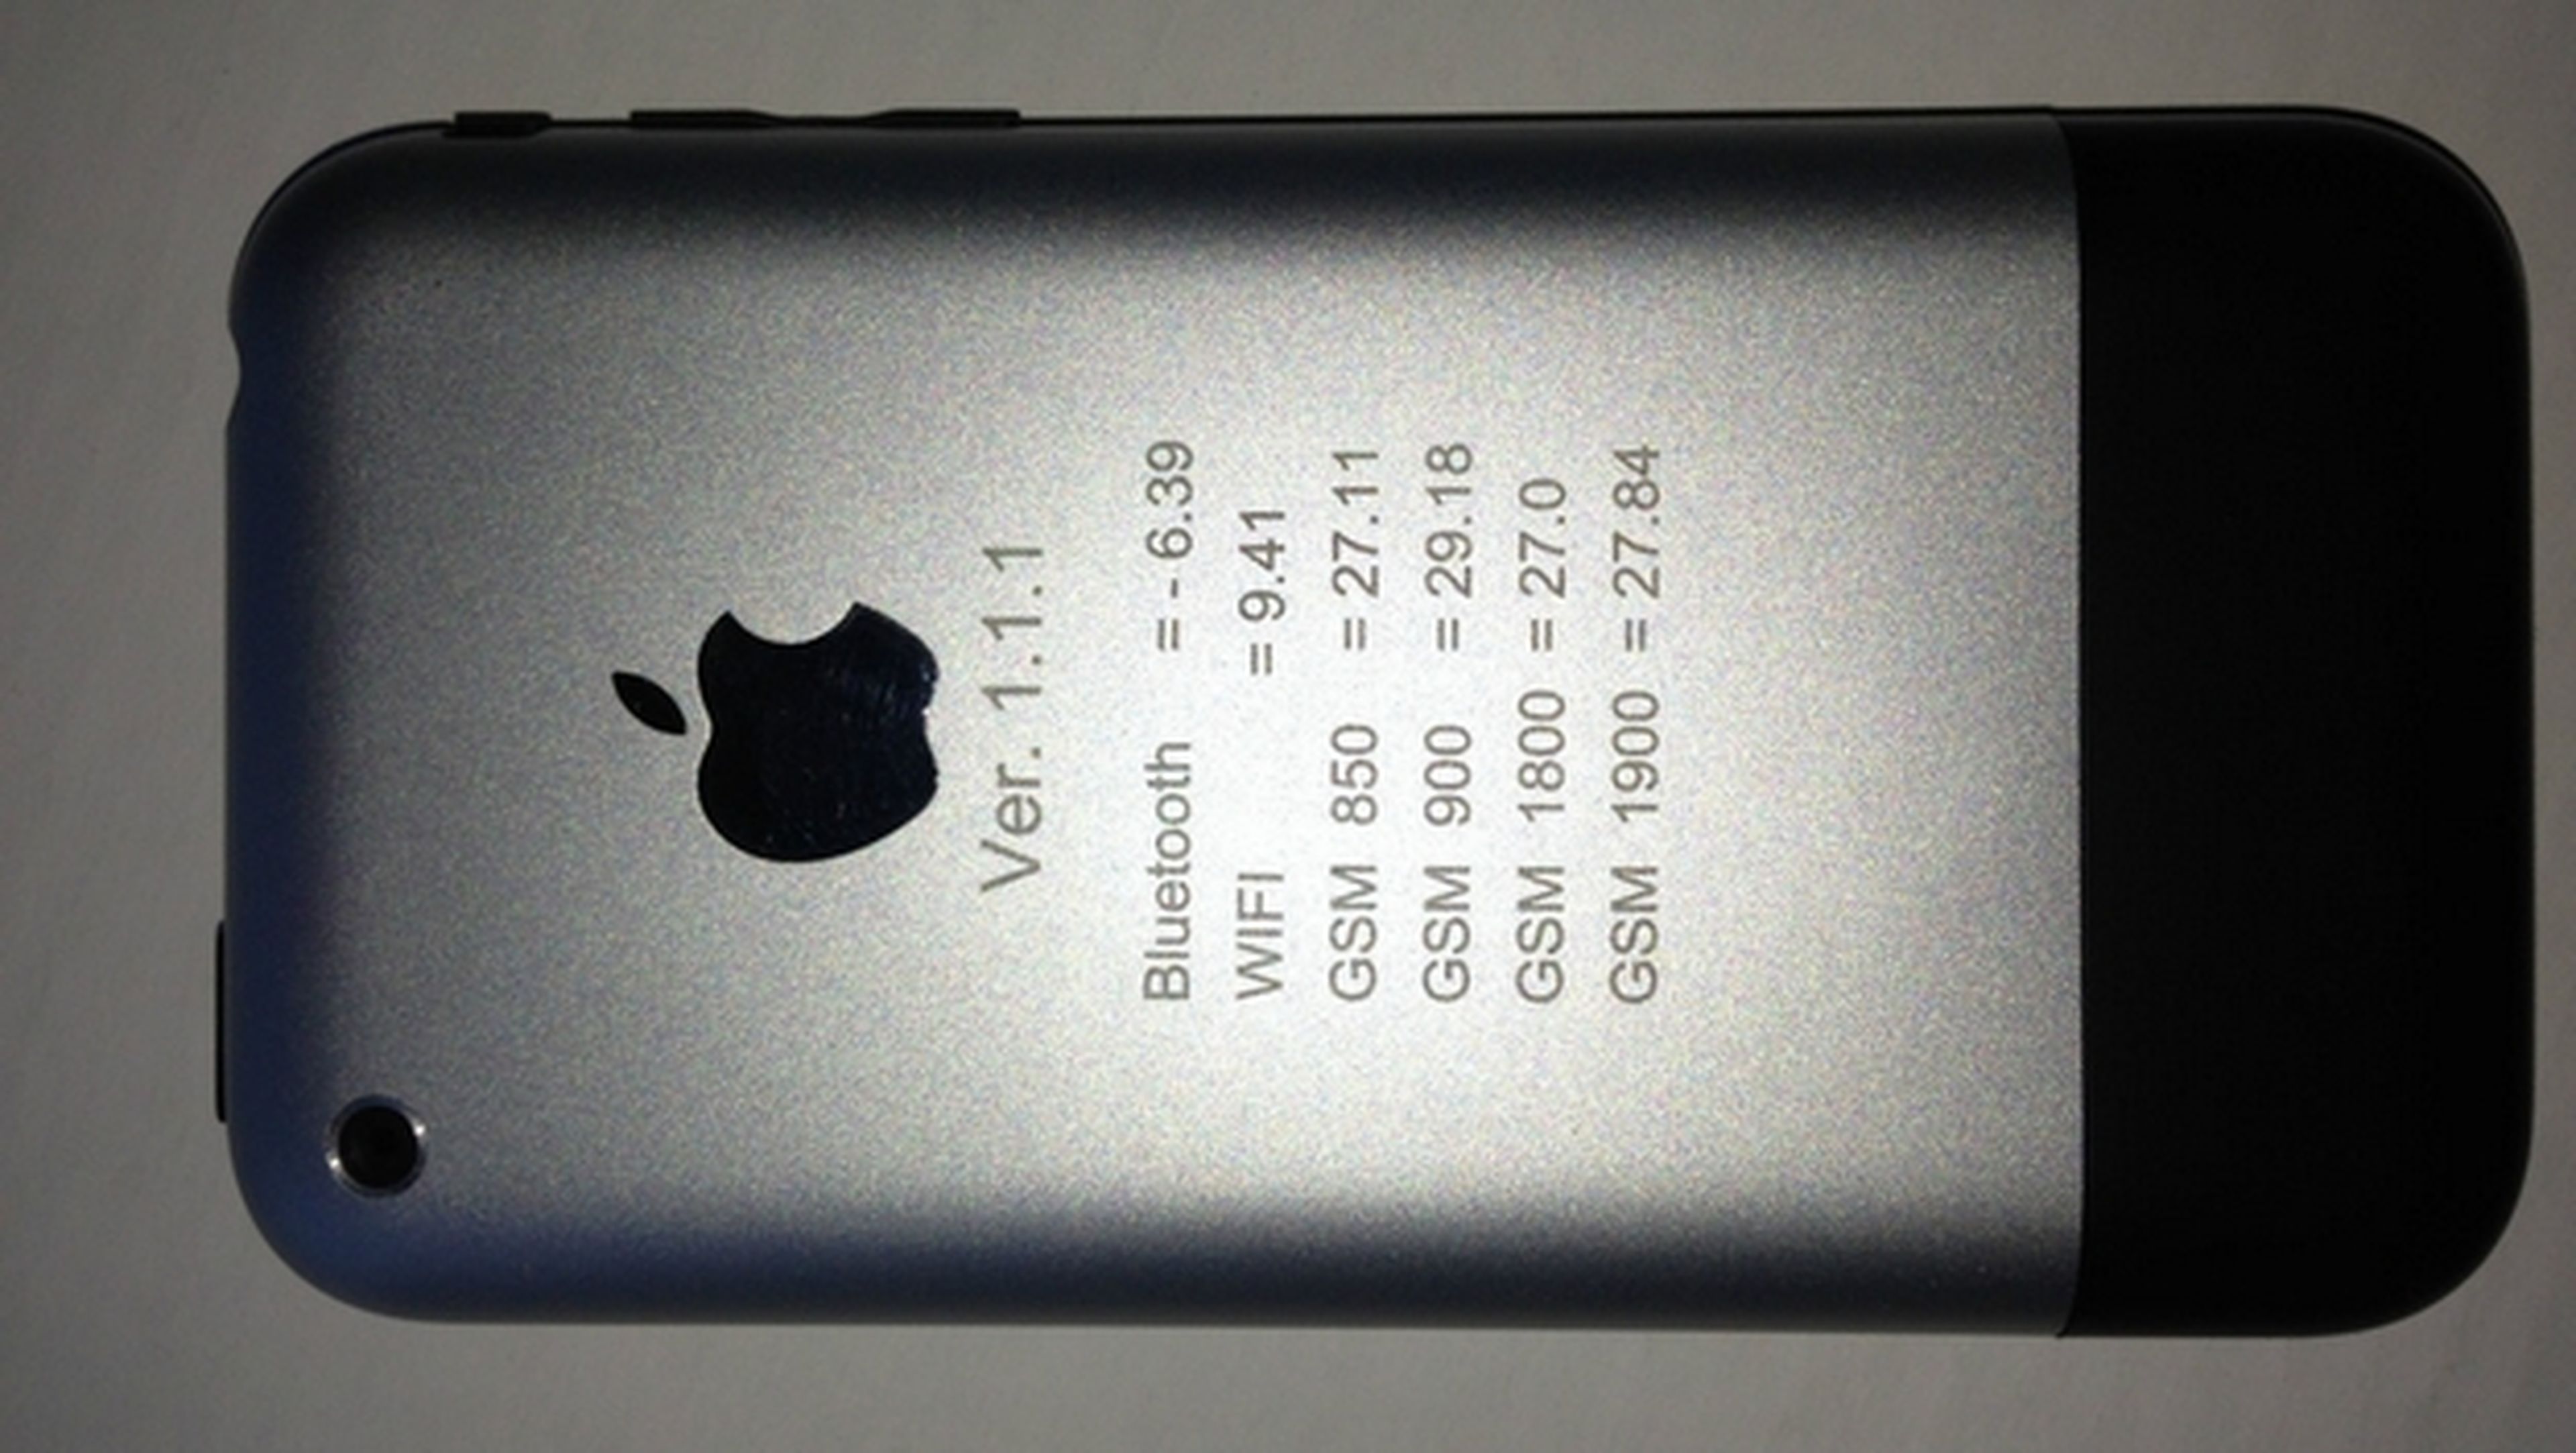 Subastan en eBay prototipo de iPhone vendido en 1500 dólares